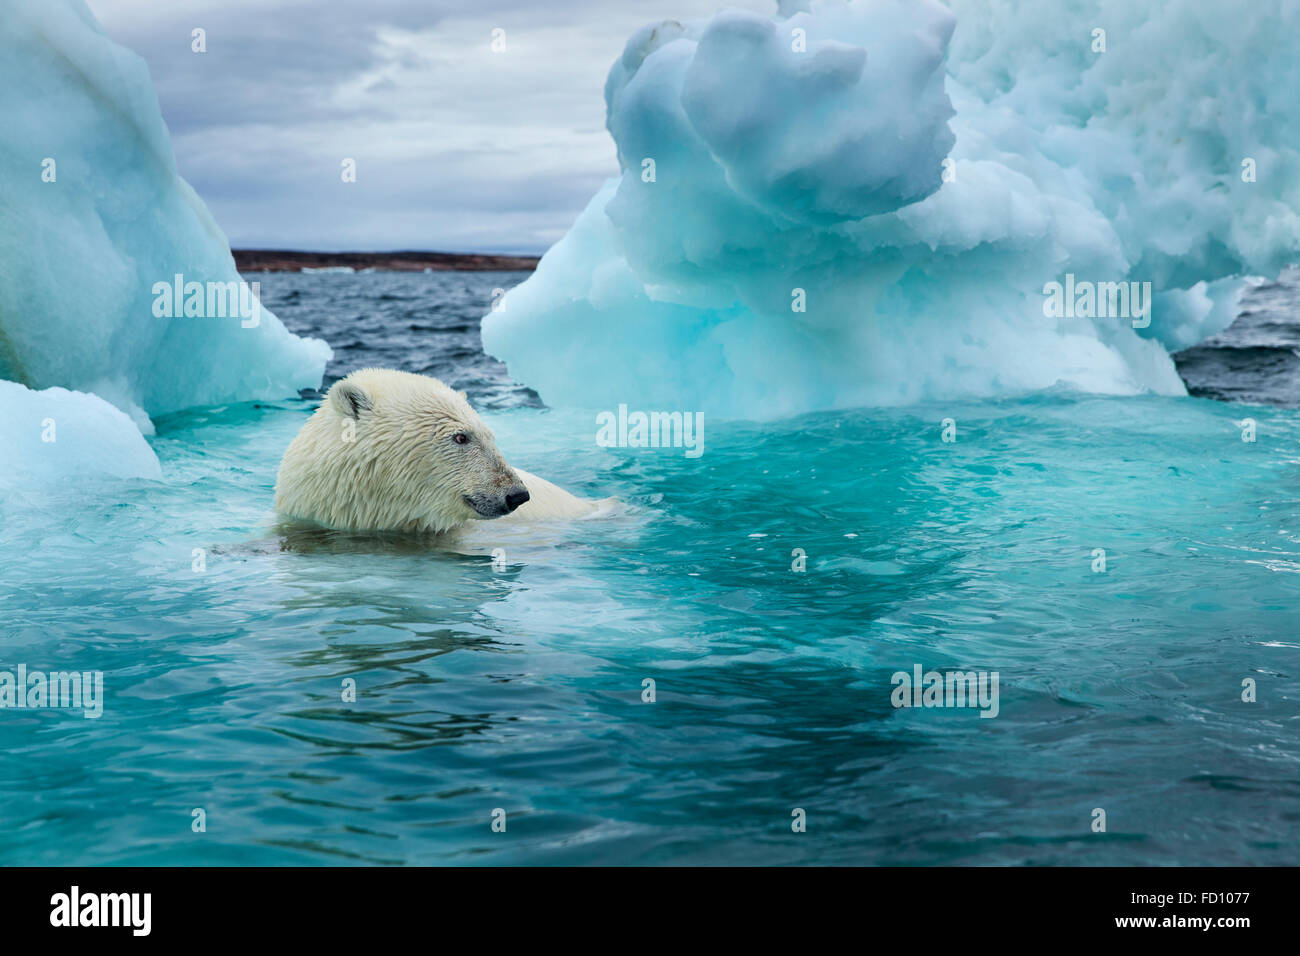 Canada, Nunavut Territorio, Repulse Bay, orso polare (Ursus maritimus) nuoto accanto a fusione di iceberg vicino al Circolo Polare Artico in Hudso Foto Stock